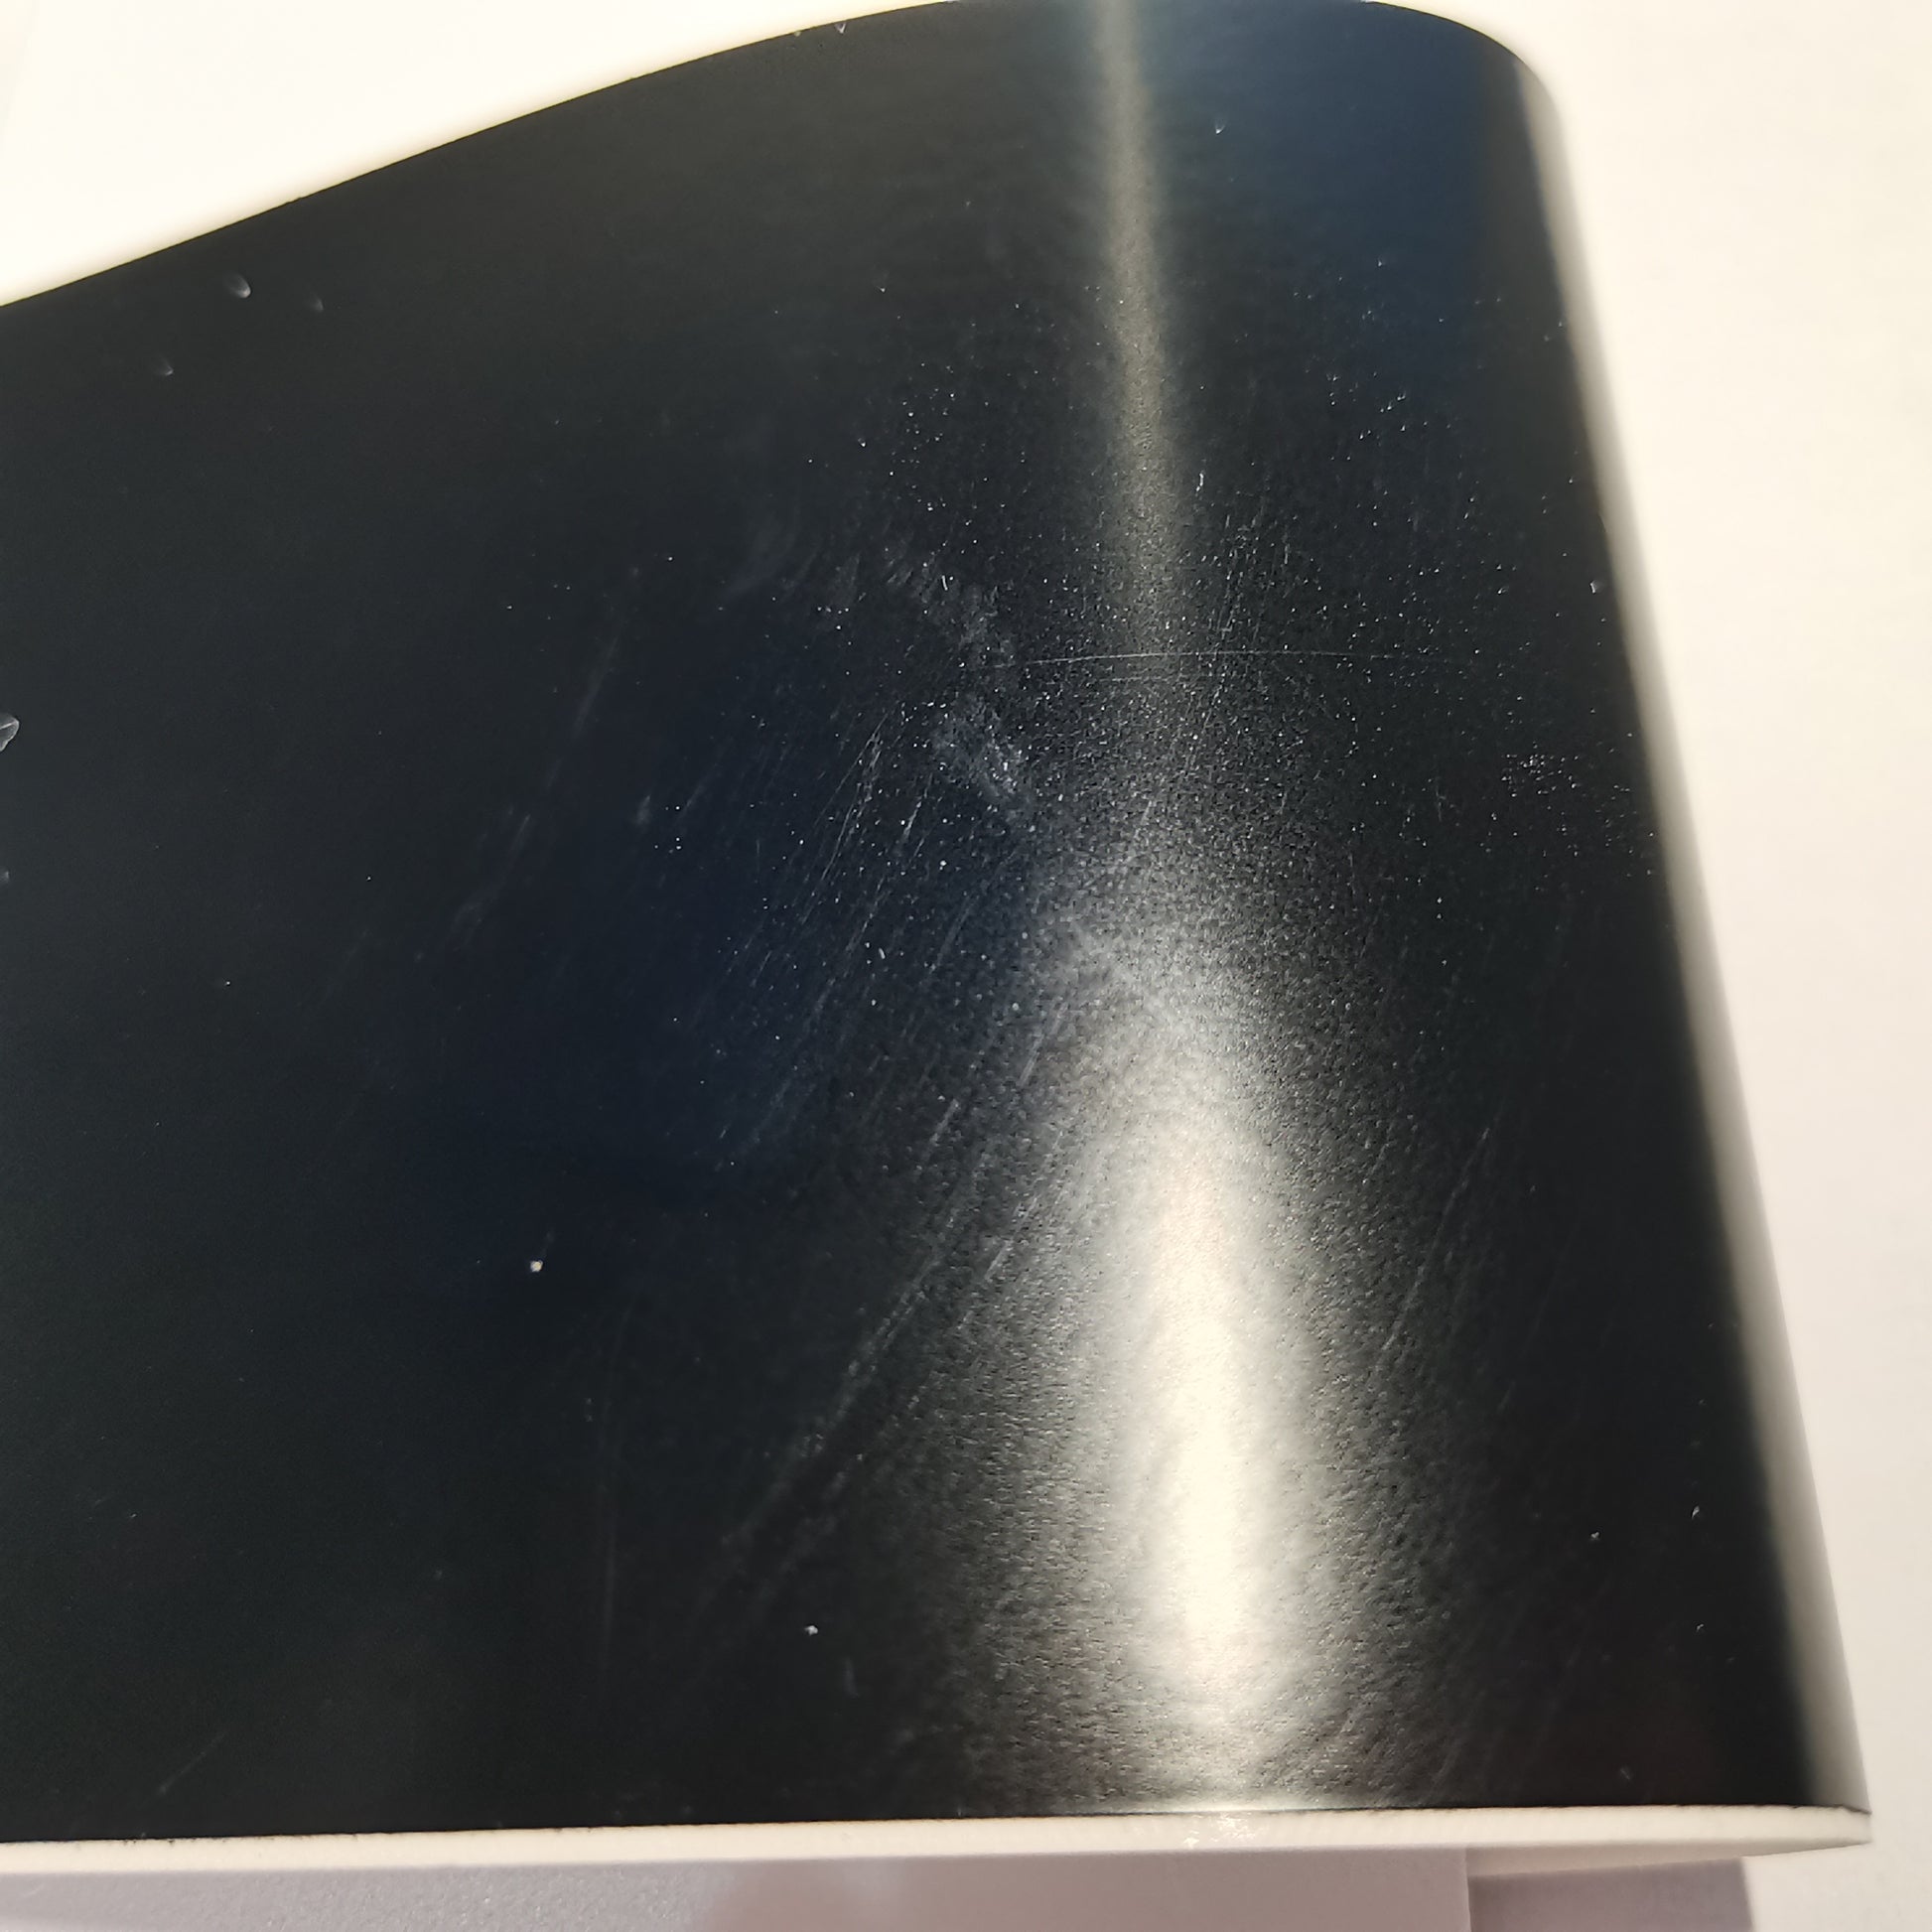 Premium Matte Satin Metallic Black Vinyl Wrap Film